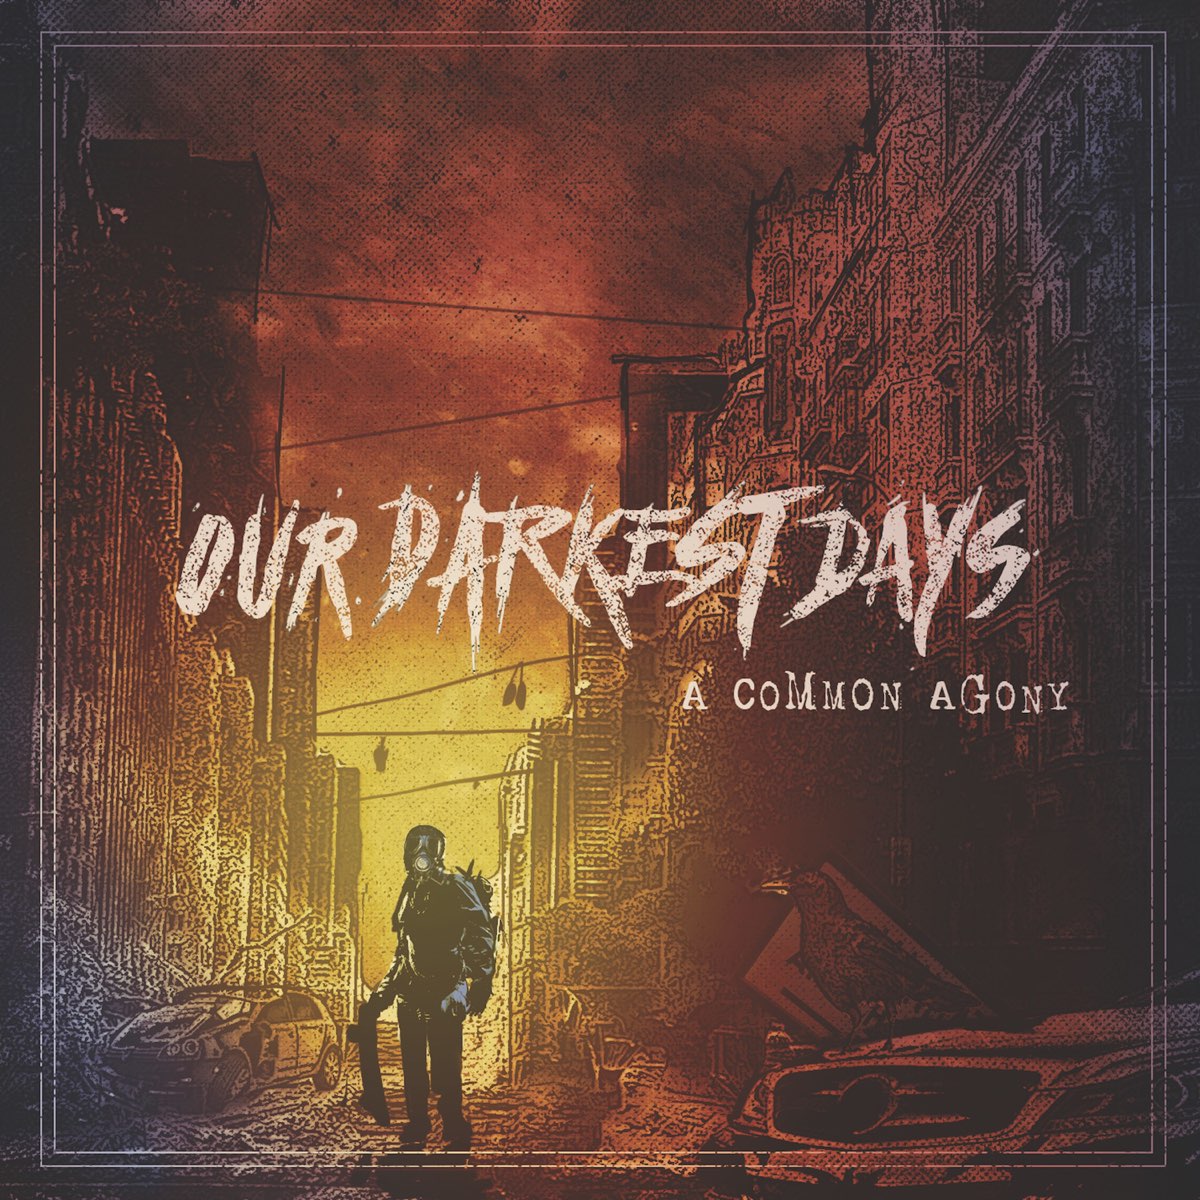 My darkest day come. Darkest of Days обложка. My Darkest Days обложка. Nesser Hakan "the Darkest Day".